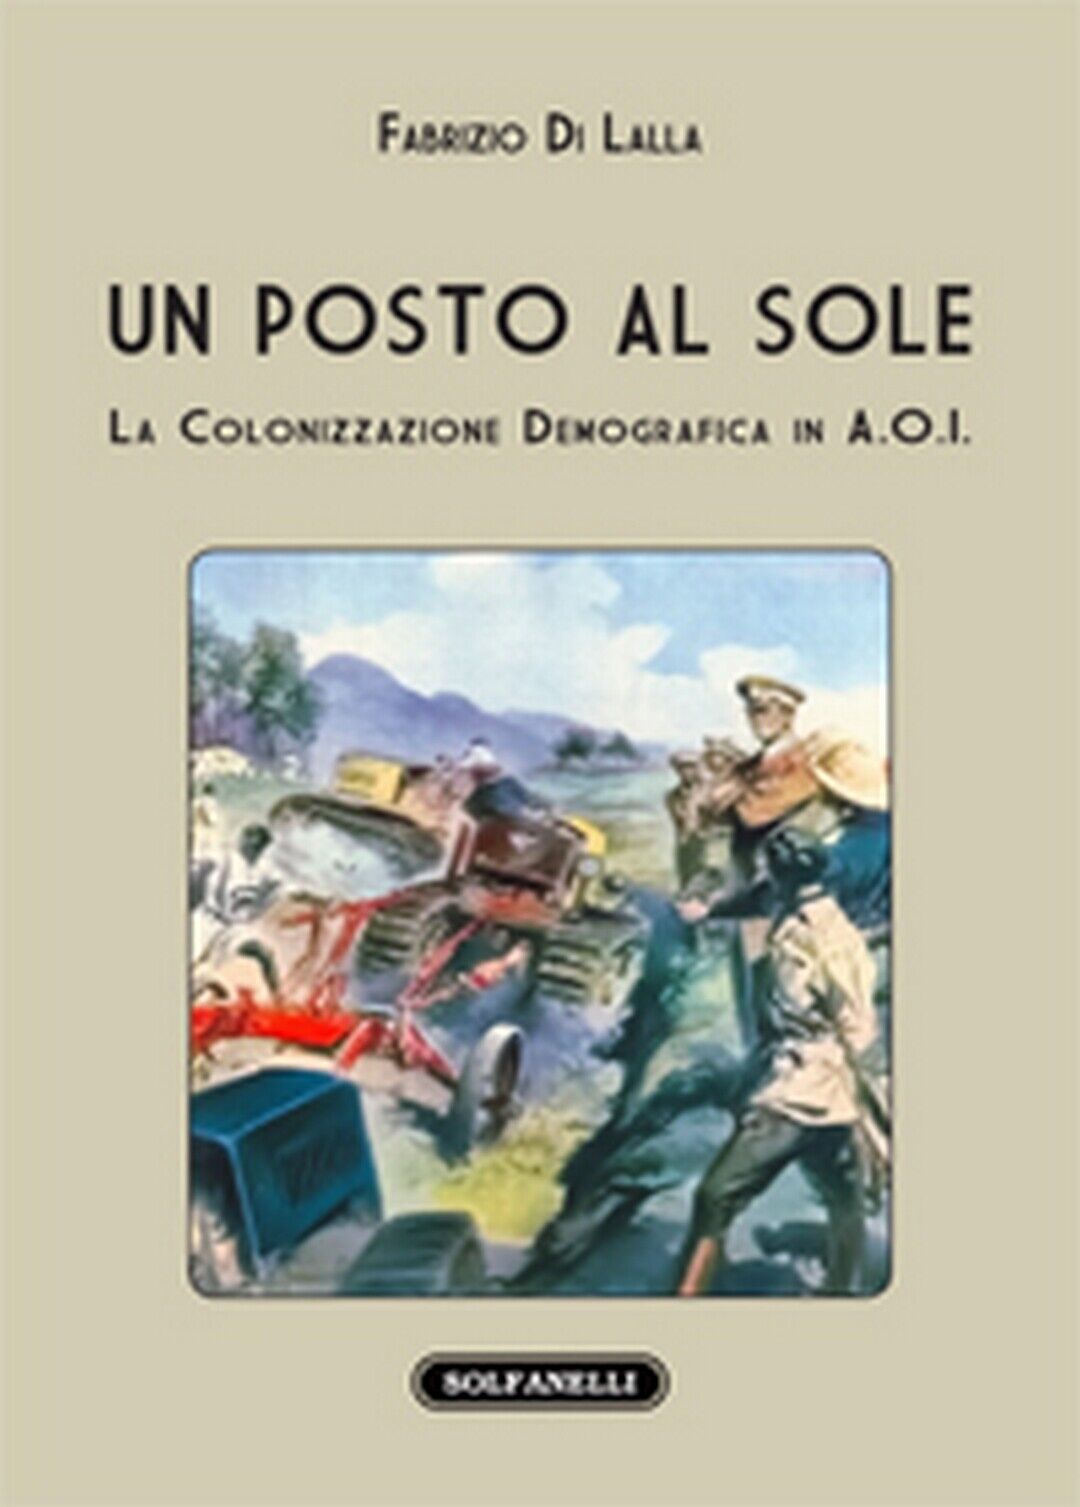 UN POSTO AL SOLE La colonizzazione demografica in A.O.I.  di Fabrizio Di Lalla